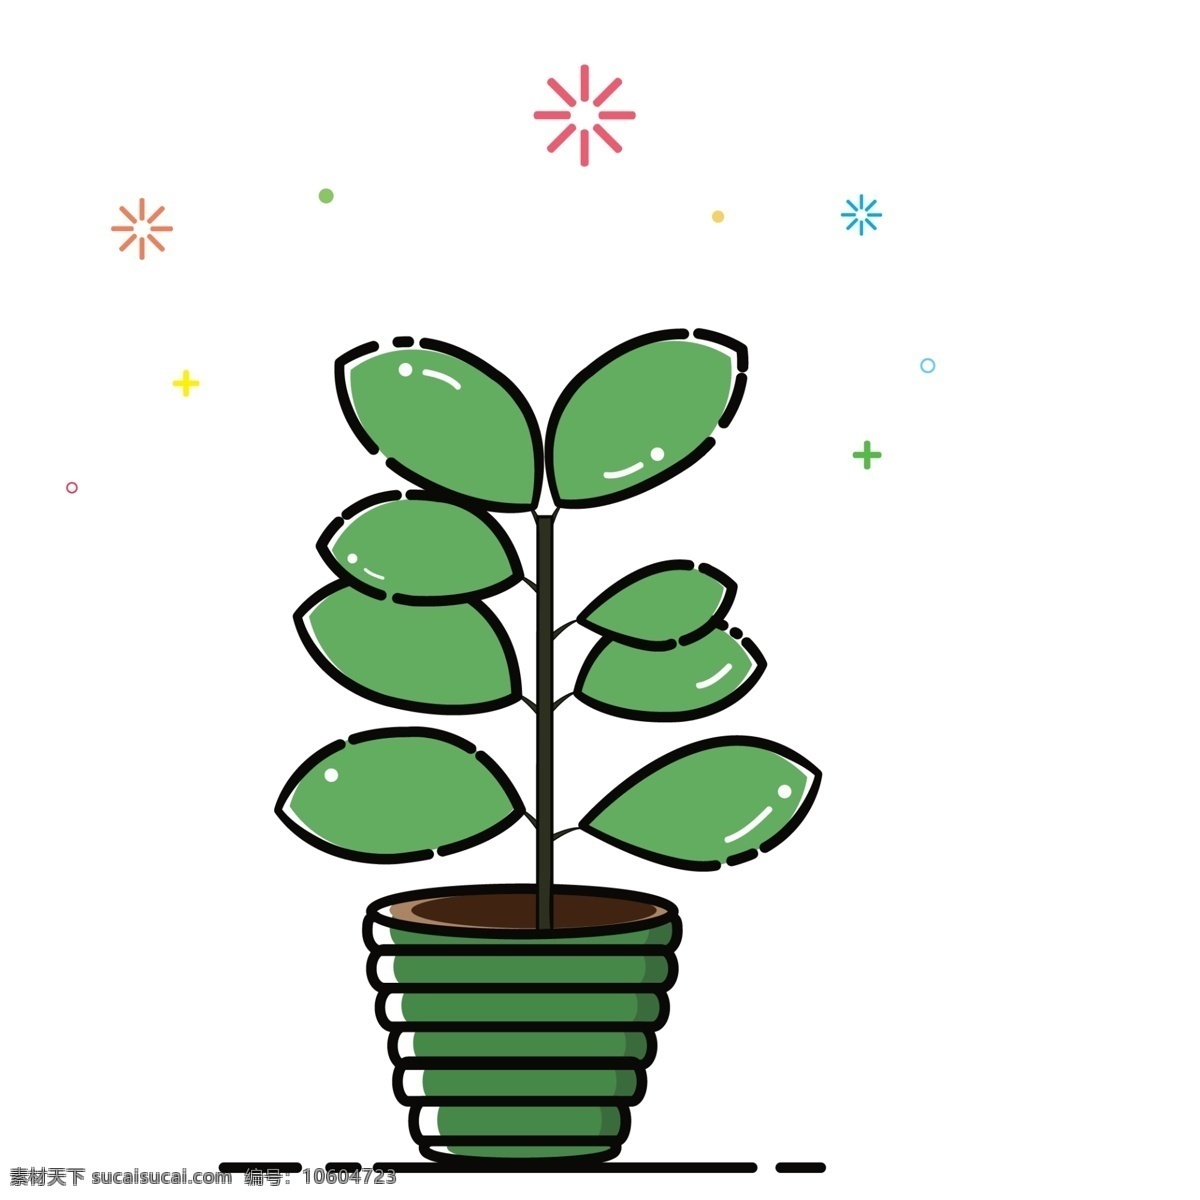 手绘 卡通 植物 免 抠 图 绿色植物 绿色叶子 绿色盆栽 生态植物 居家盆栽 清新空气 手绘卡通植物 免抠图